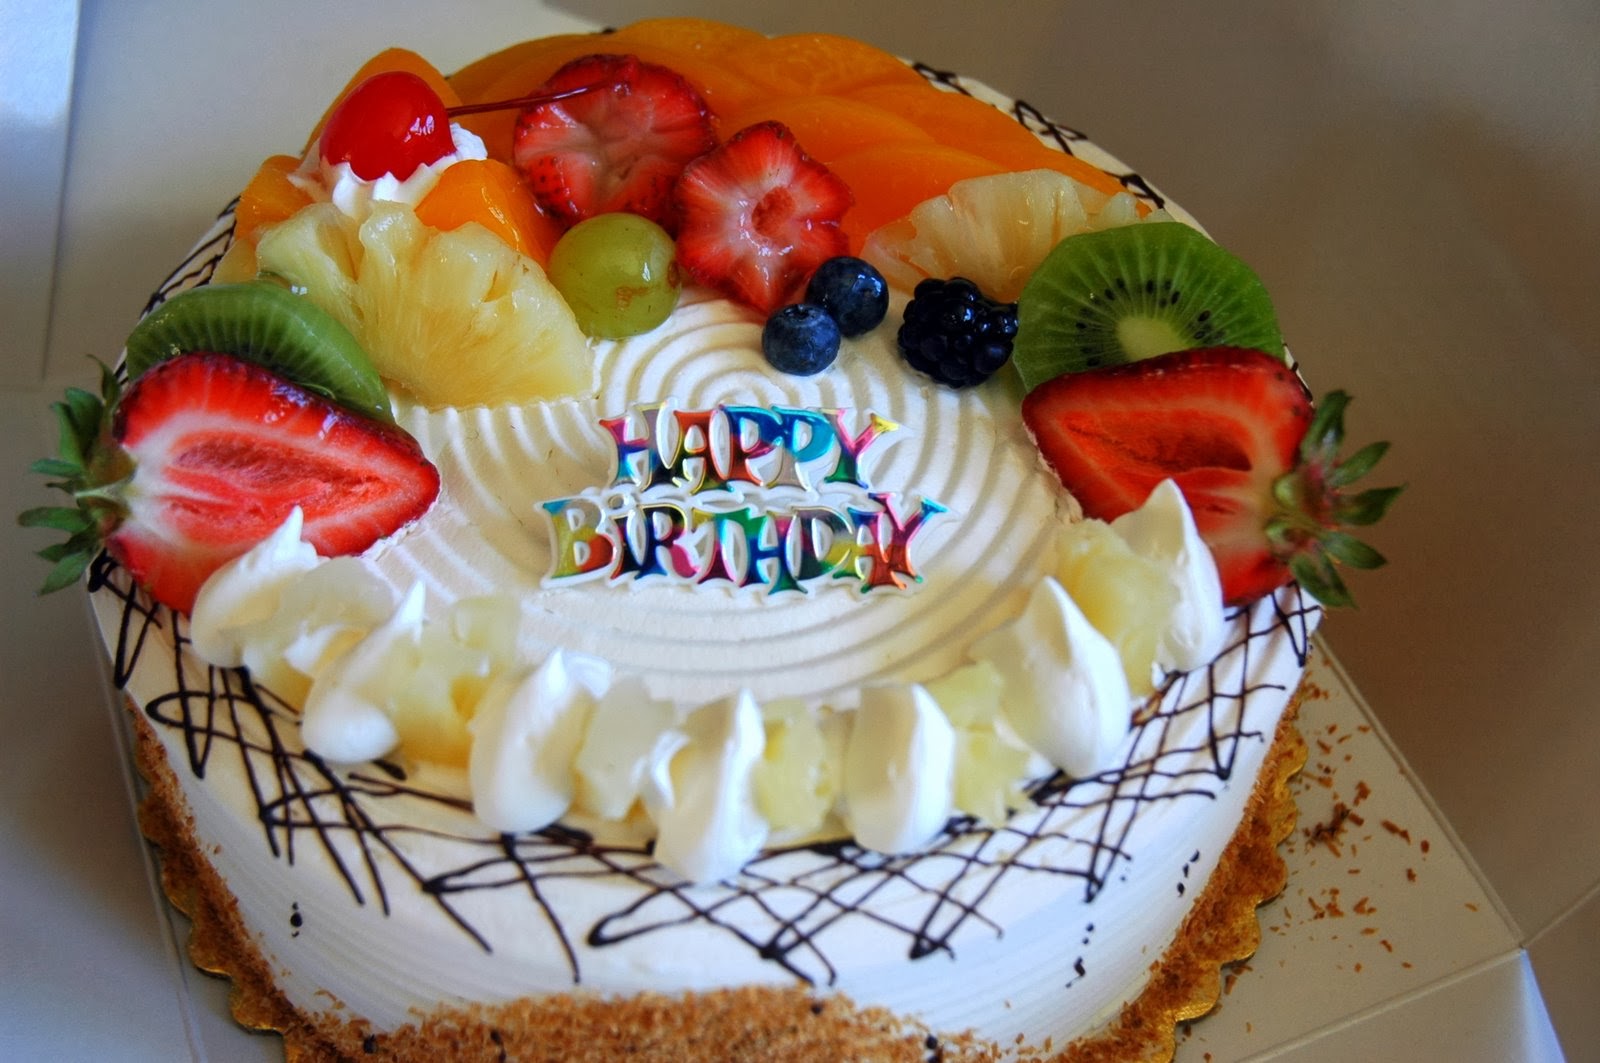 birthday cake wallpaper free download,food,cake,fruit cake,dish,dessert